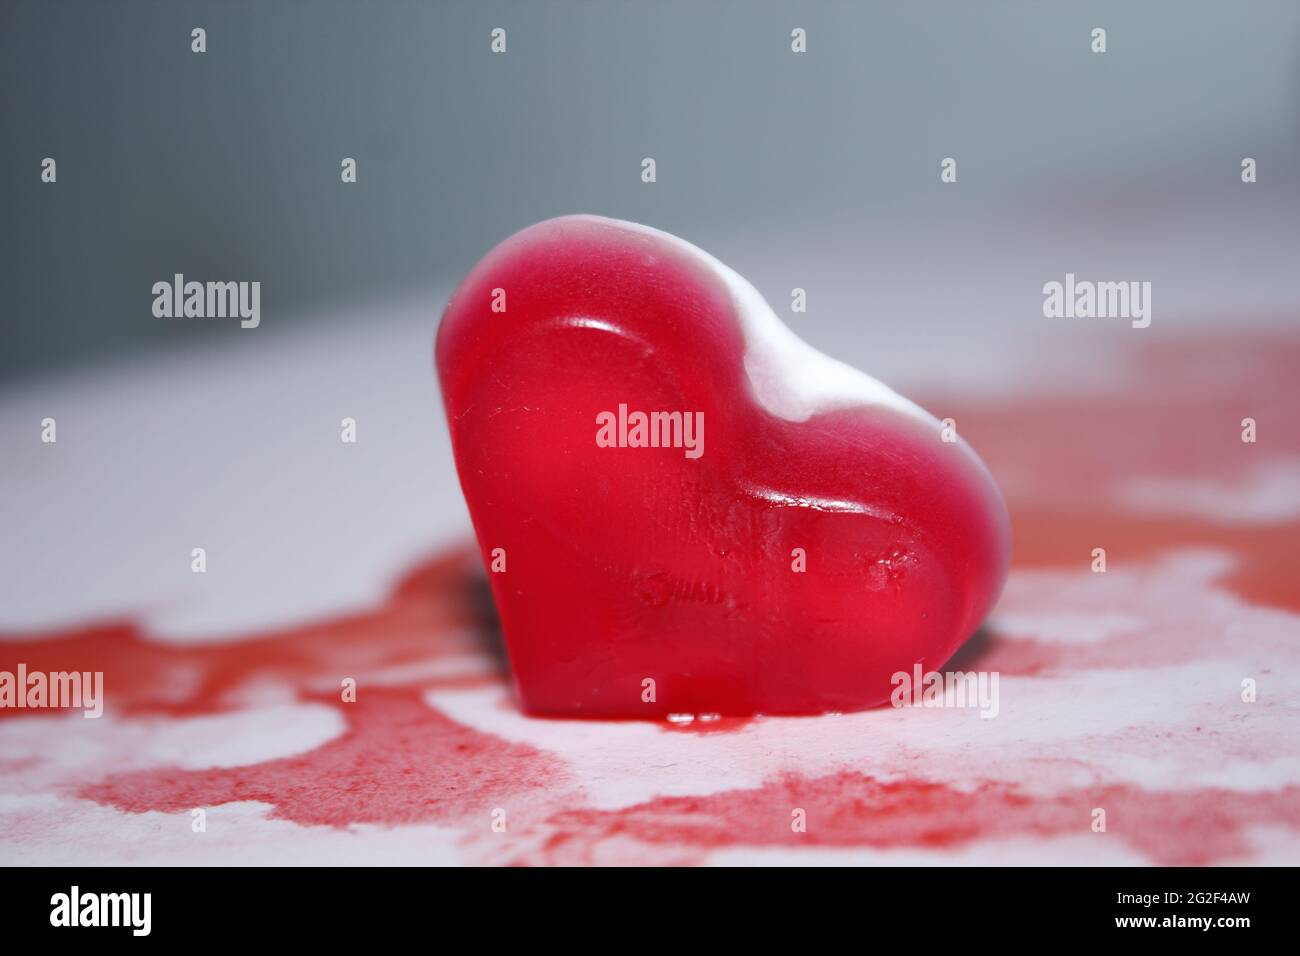 Bonbons coeur de Saint-Valentin, belle photographie. Banque D'Images